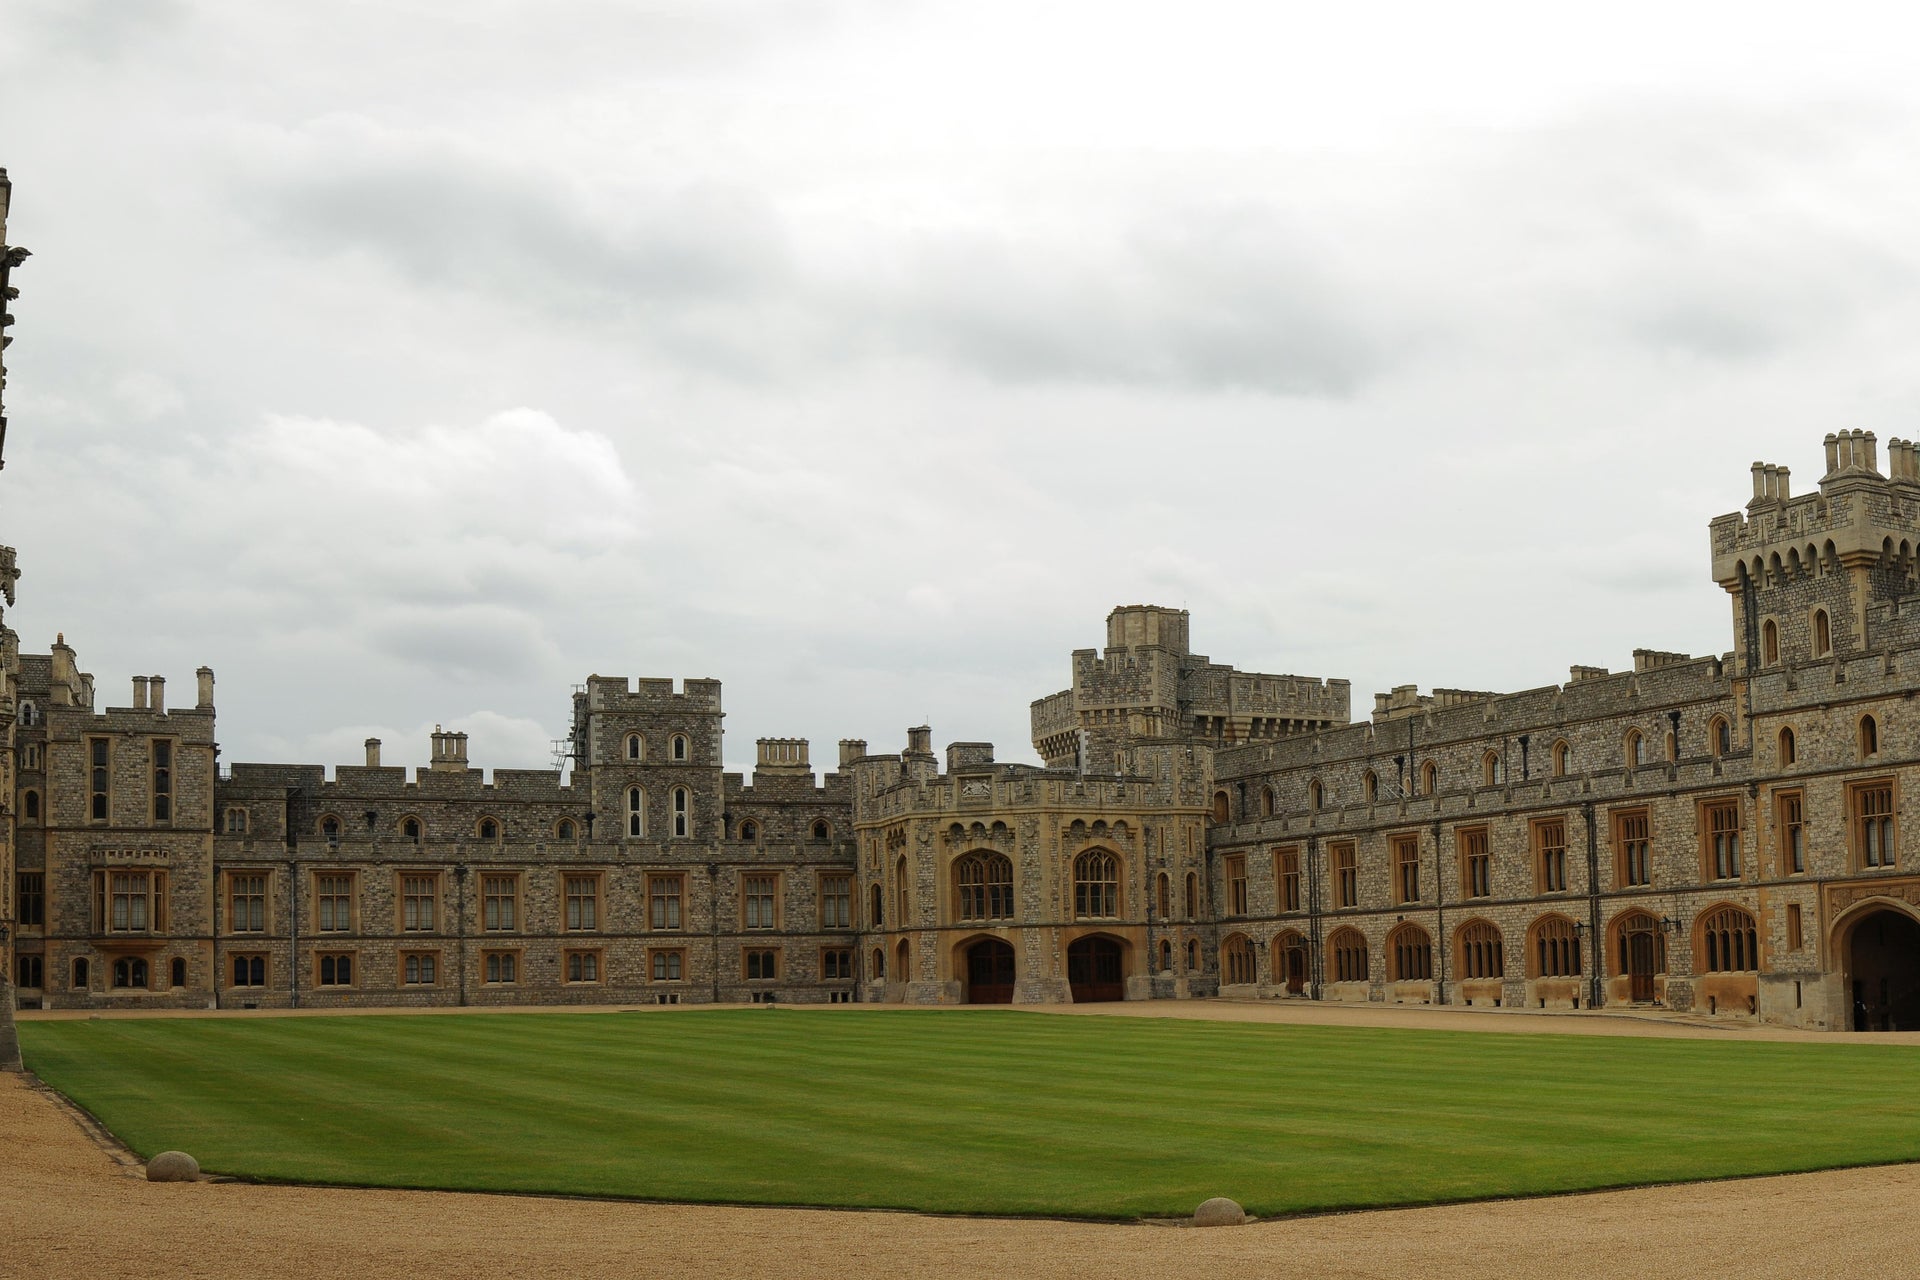 Excursão ao Castelo de Windsor